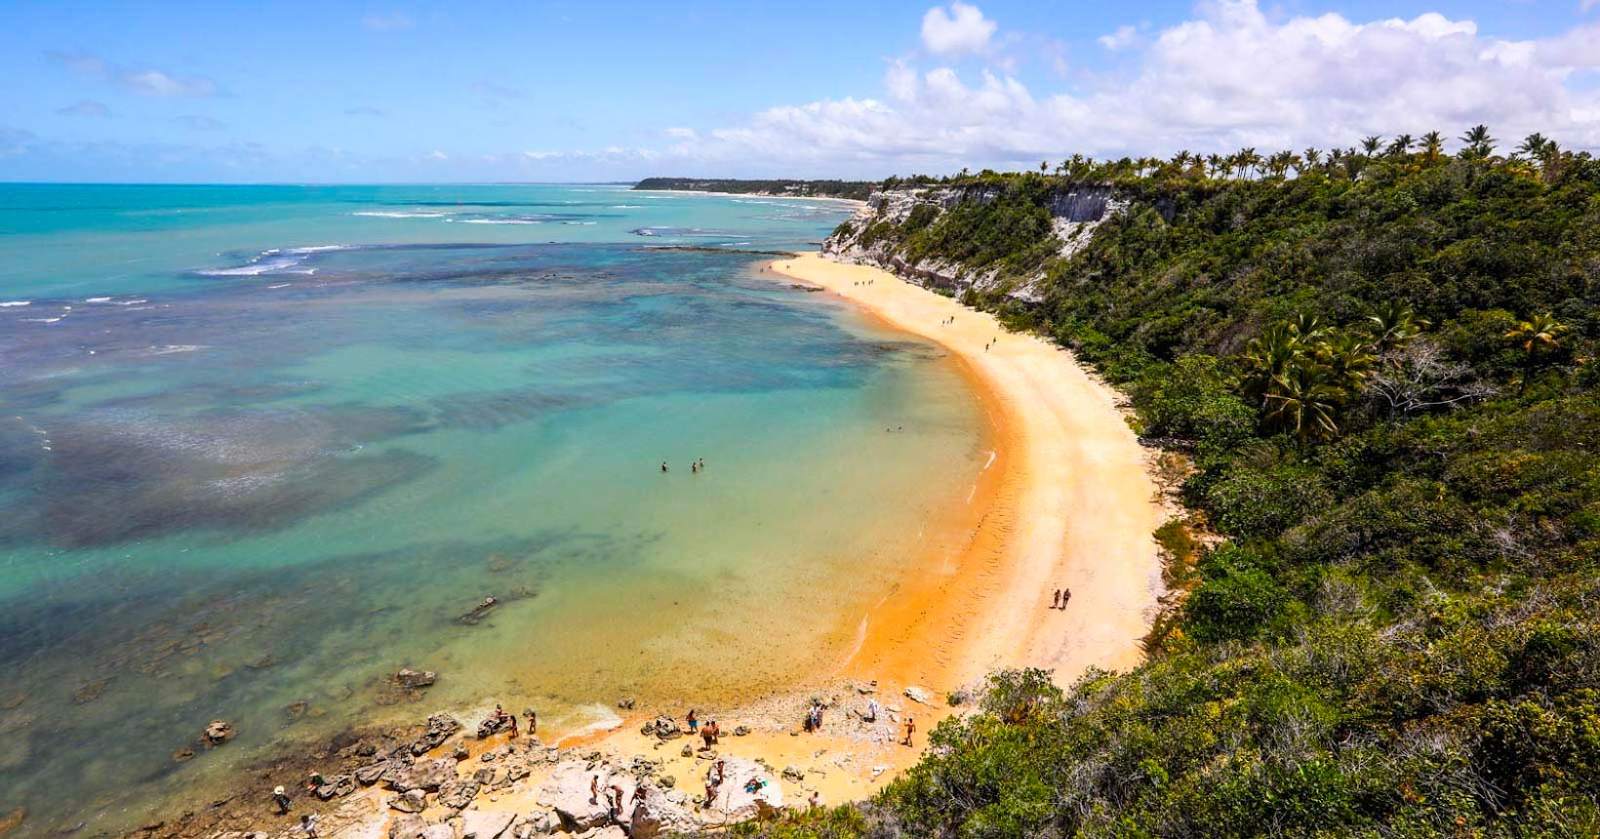 Uma das praias mais deslumbrantes do sul da Bahia, a Praia do Espelho oferece falésias coloridas e piscinas naturais durante a maré baixa. Reprodução/Wowtickets.com